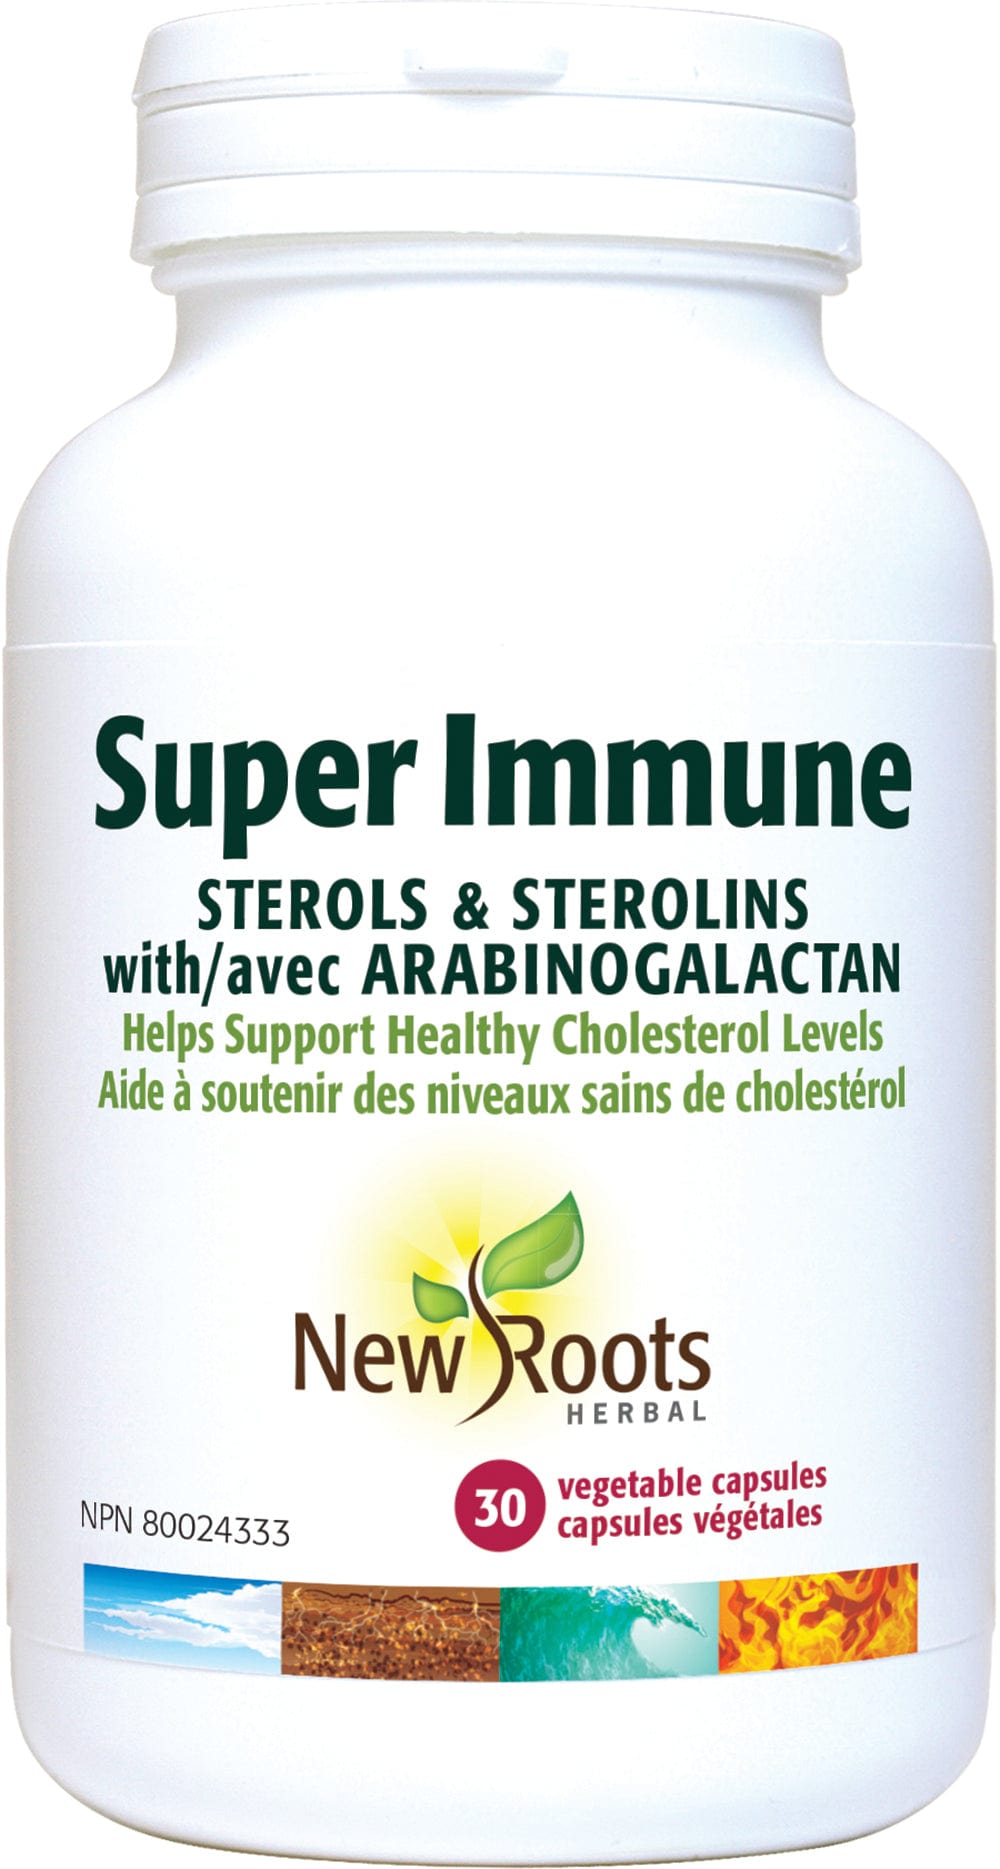 NEW ROOTS HERBAL Suppléments Super Immune (stérols et stérolines avecarabinogalactane)  30caps